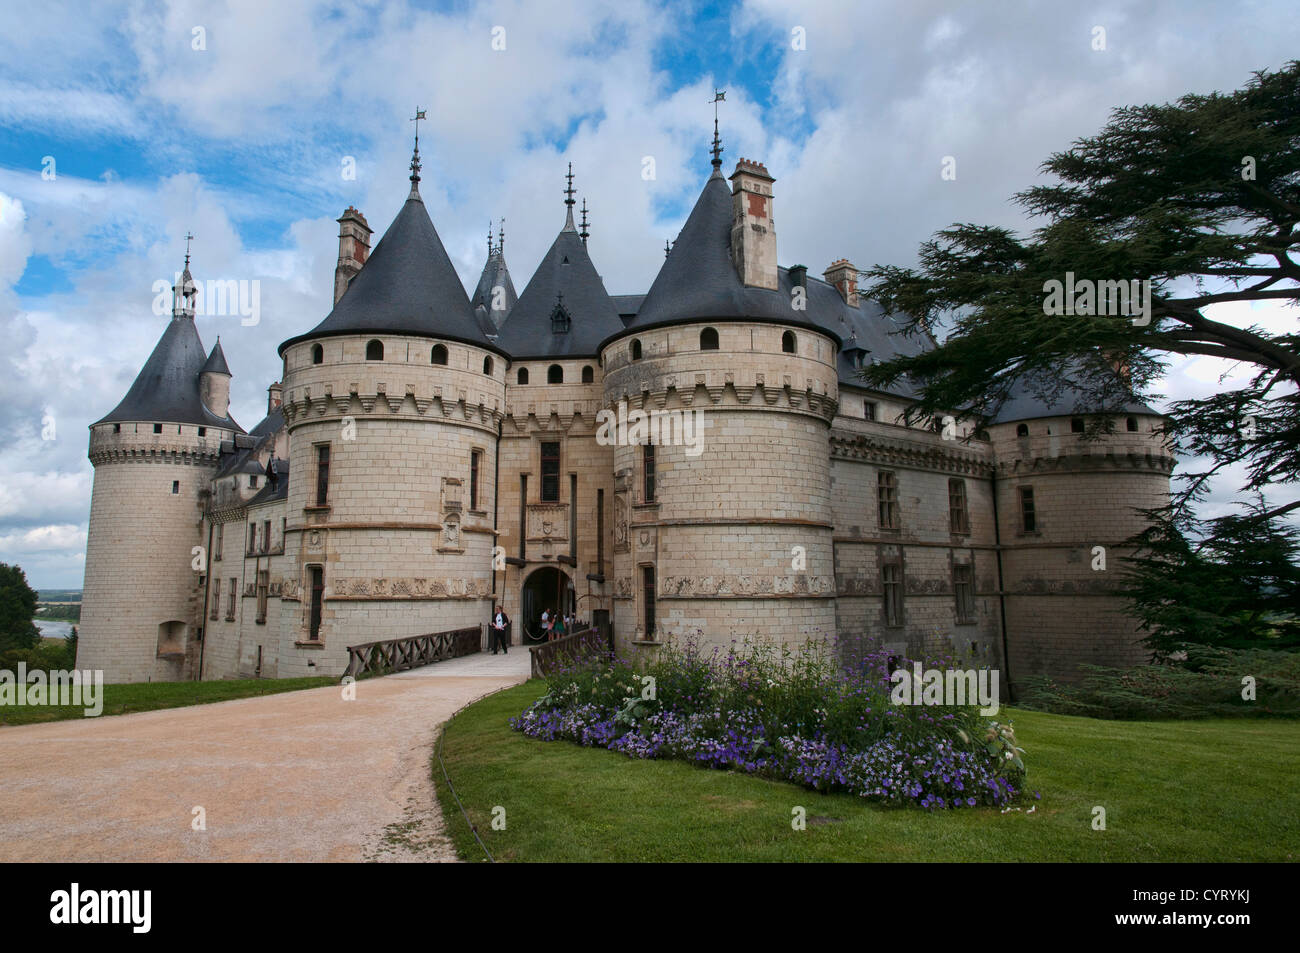 The Château de Chaumont is a castle in Chaumont-sur-Loire, Loir-et-Cher, France. Stock Photo